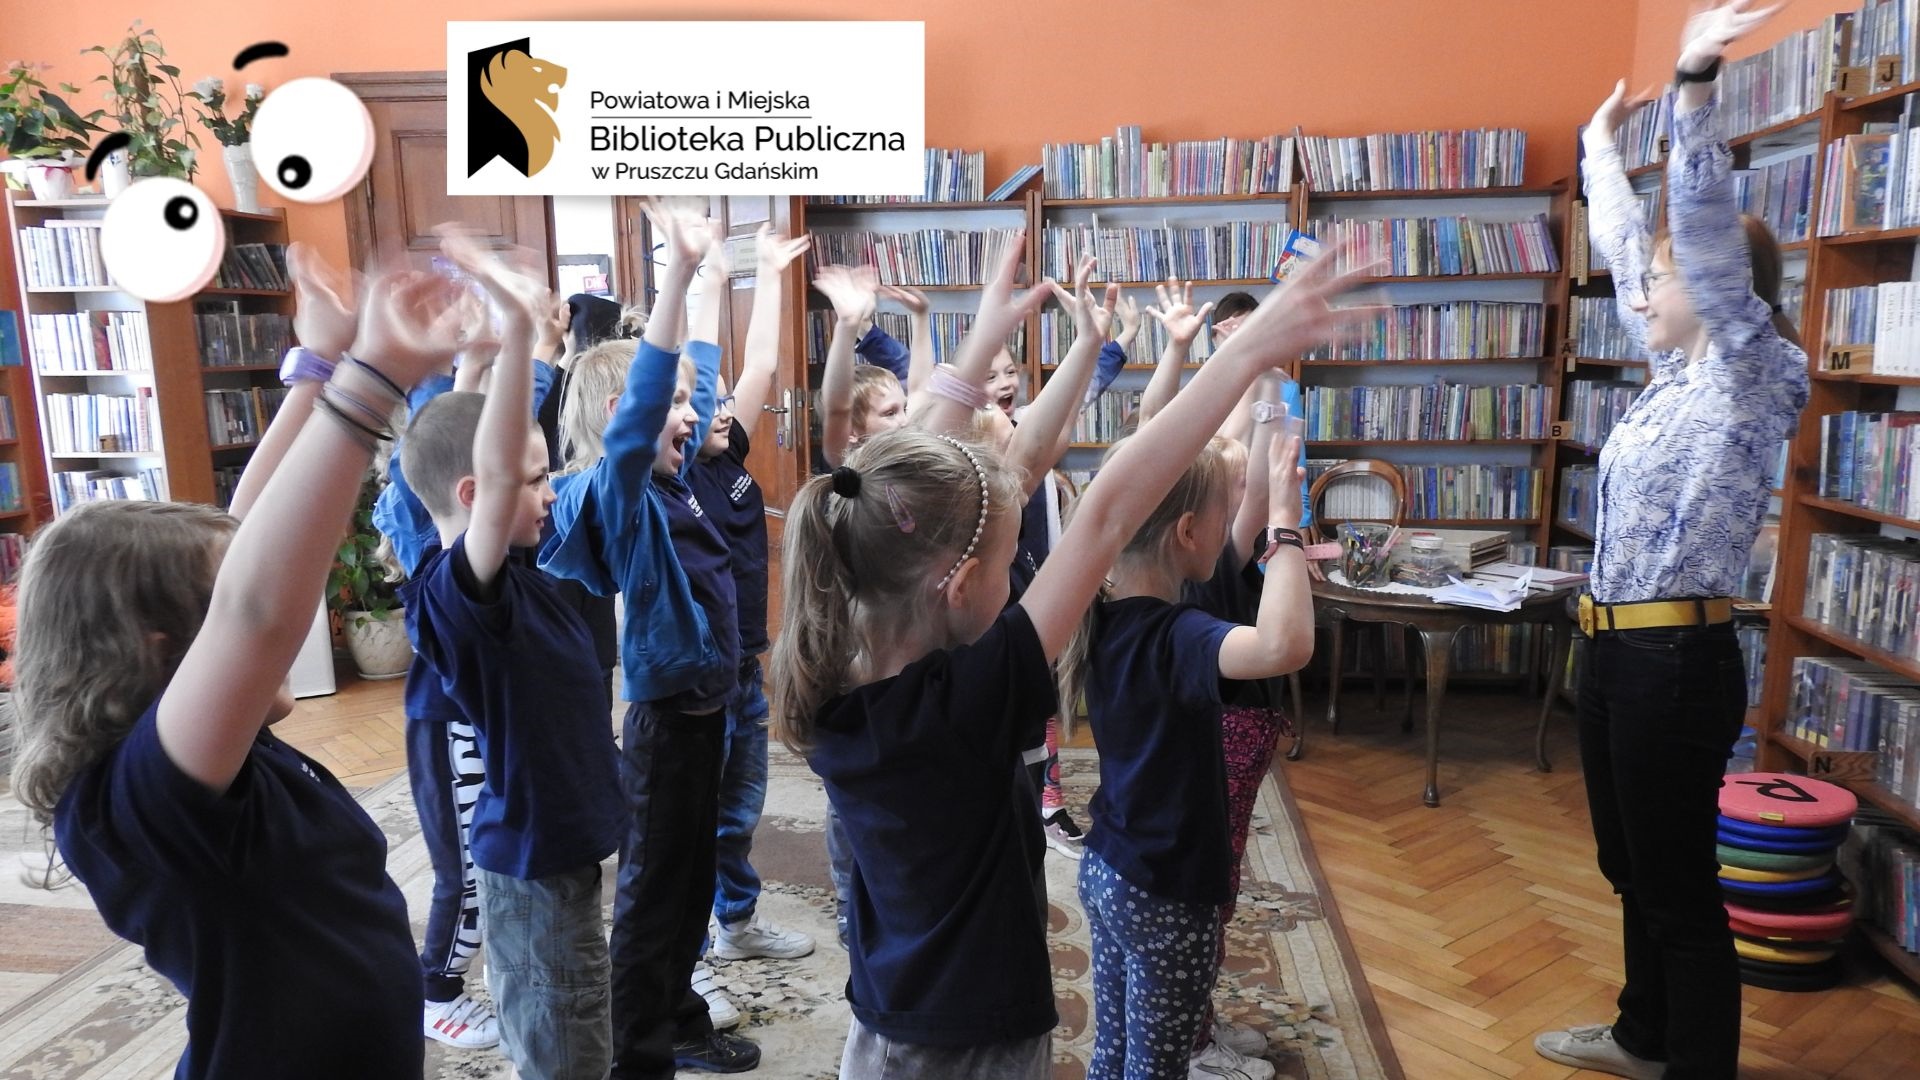 Grupa dzieci stoi naprzeciwko osoby dorosłej. Wszyscy trzymają ręce w górze. W tle regały z książkami. W lewym górnym rogu logotyp oraz napis: Powiatowa i Miejska Biblioteka Publiczna w Pruszczu Gdańskim.